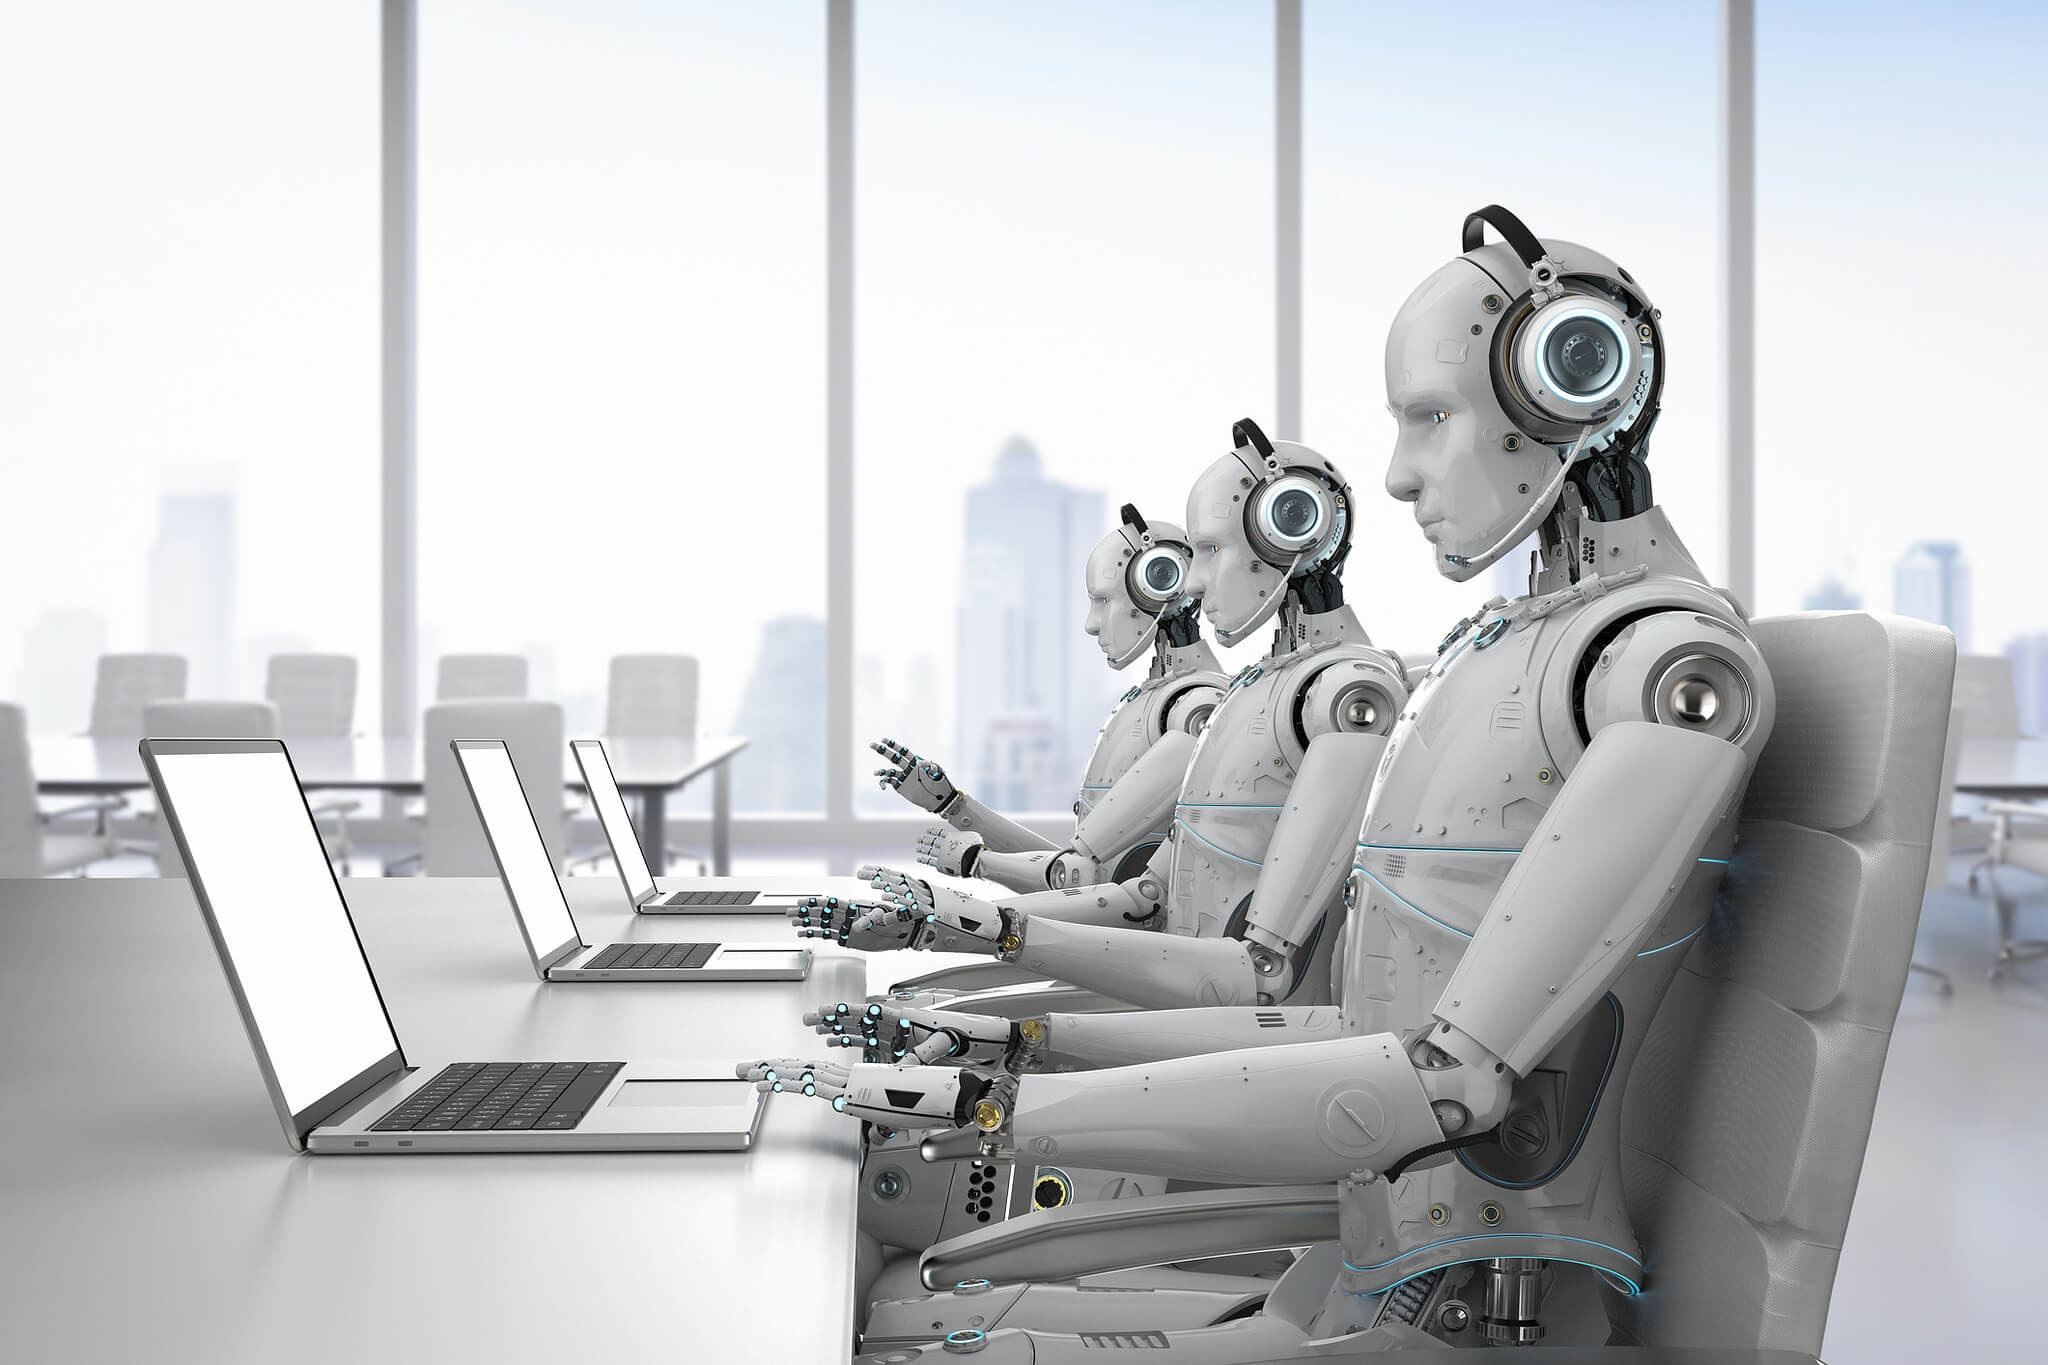 Crean inteligencia artificial capaz de hablar con atención al cliente por usted y conseguir descuentos